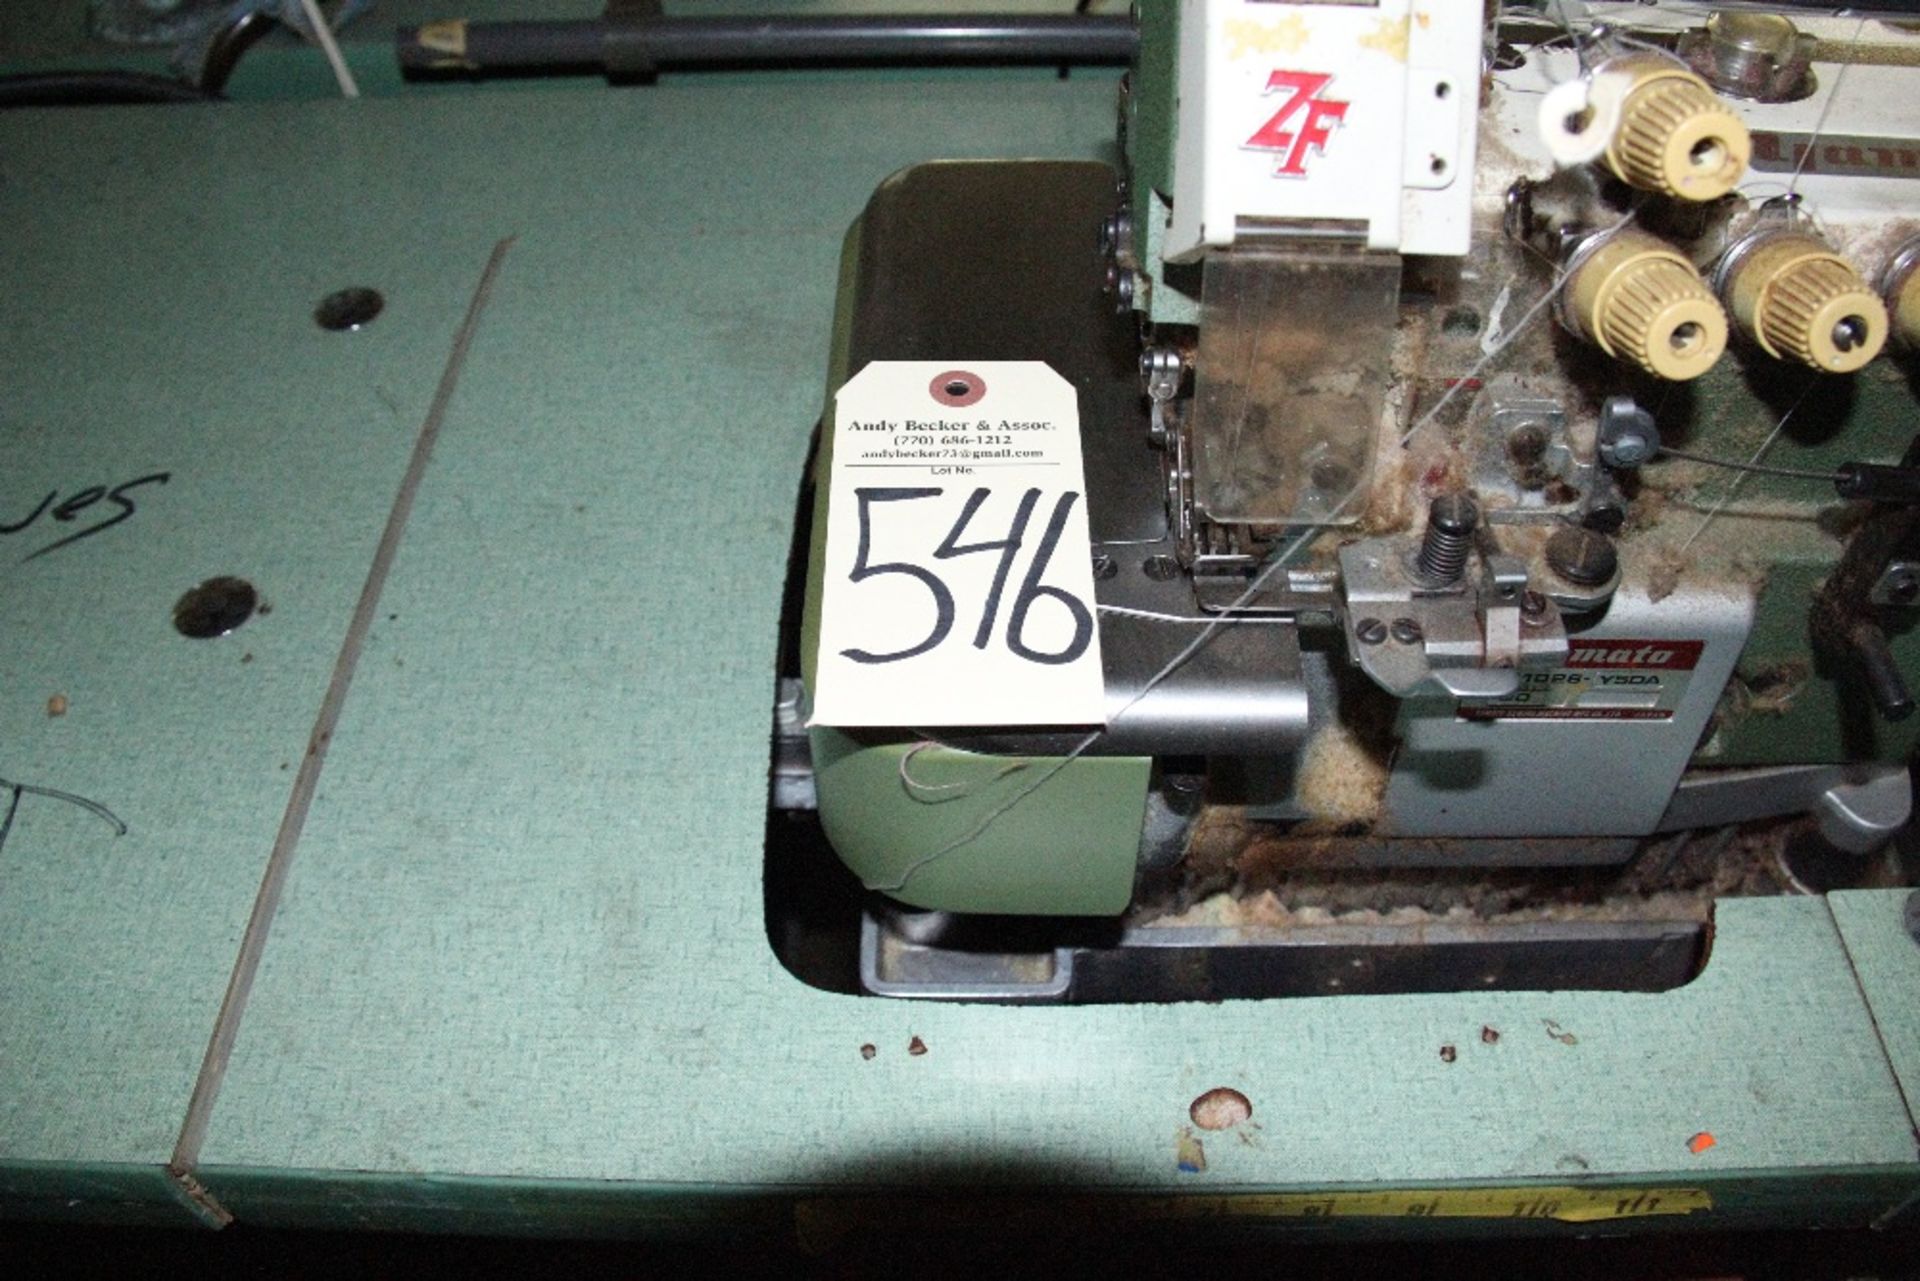 Yamato ZF1026 4-Thread Mock Safety Stitch Sewing Machine - Image 4 of 4